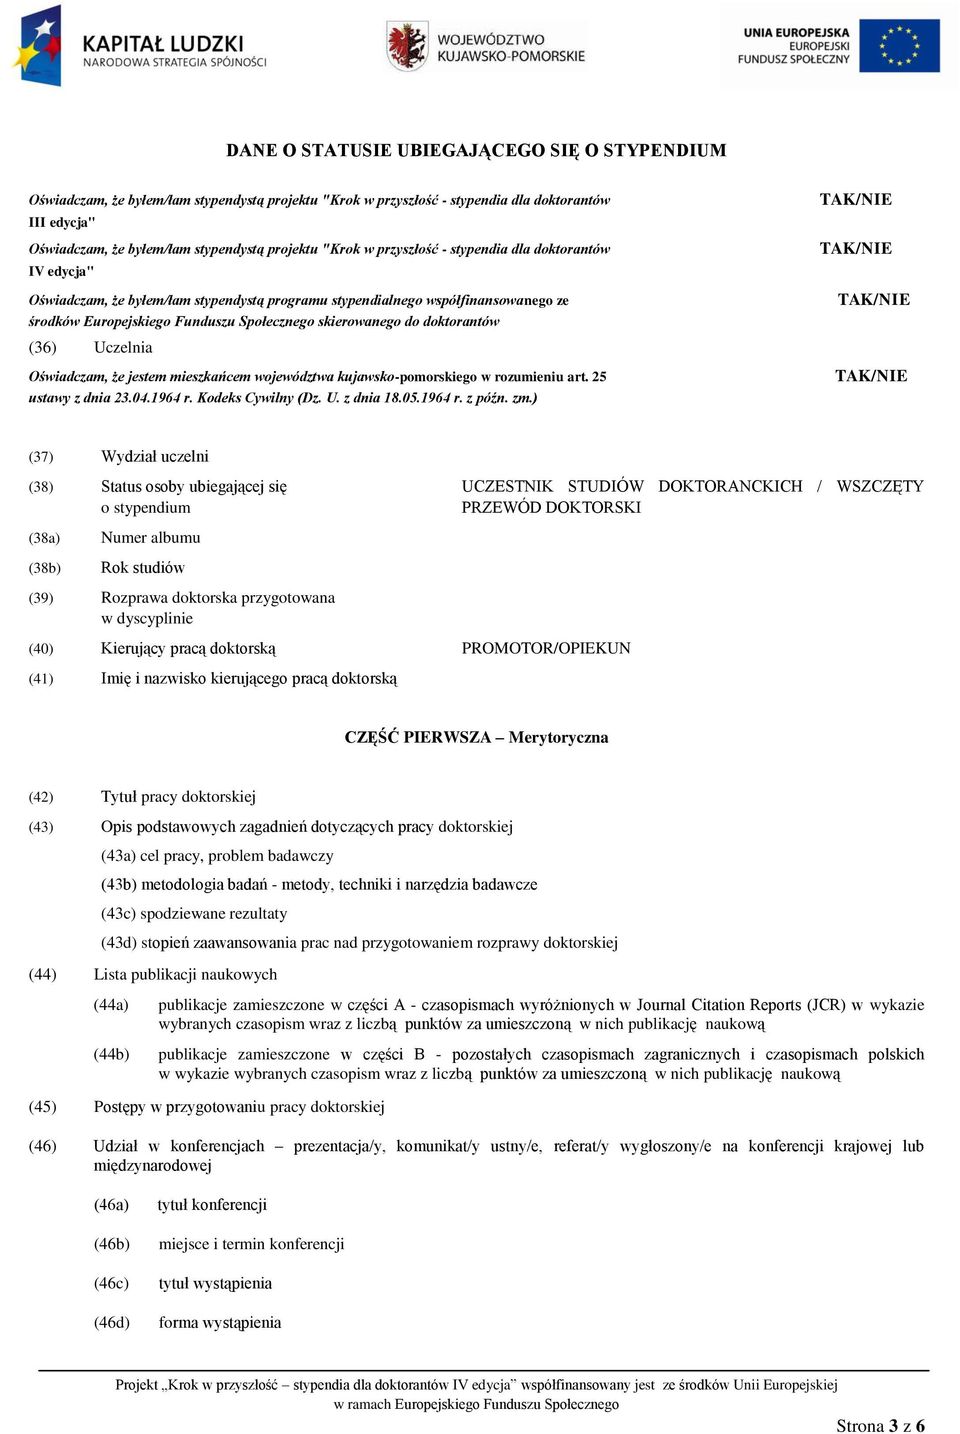 doktorantów (36) Uczelnia Oświadczam, że jestem mieszkańcem województwa kujawsko-pomorskiego w rozumieniu art. 25 ustawy z dnia 23.04.1964 r. Kodeks Cywilny (Dz. U. z dnia 18.05.1964 r. z późn. zm.